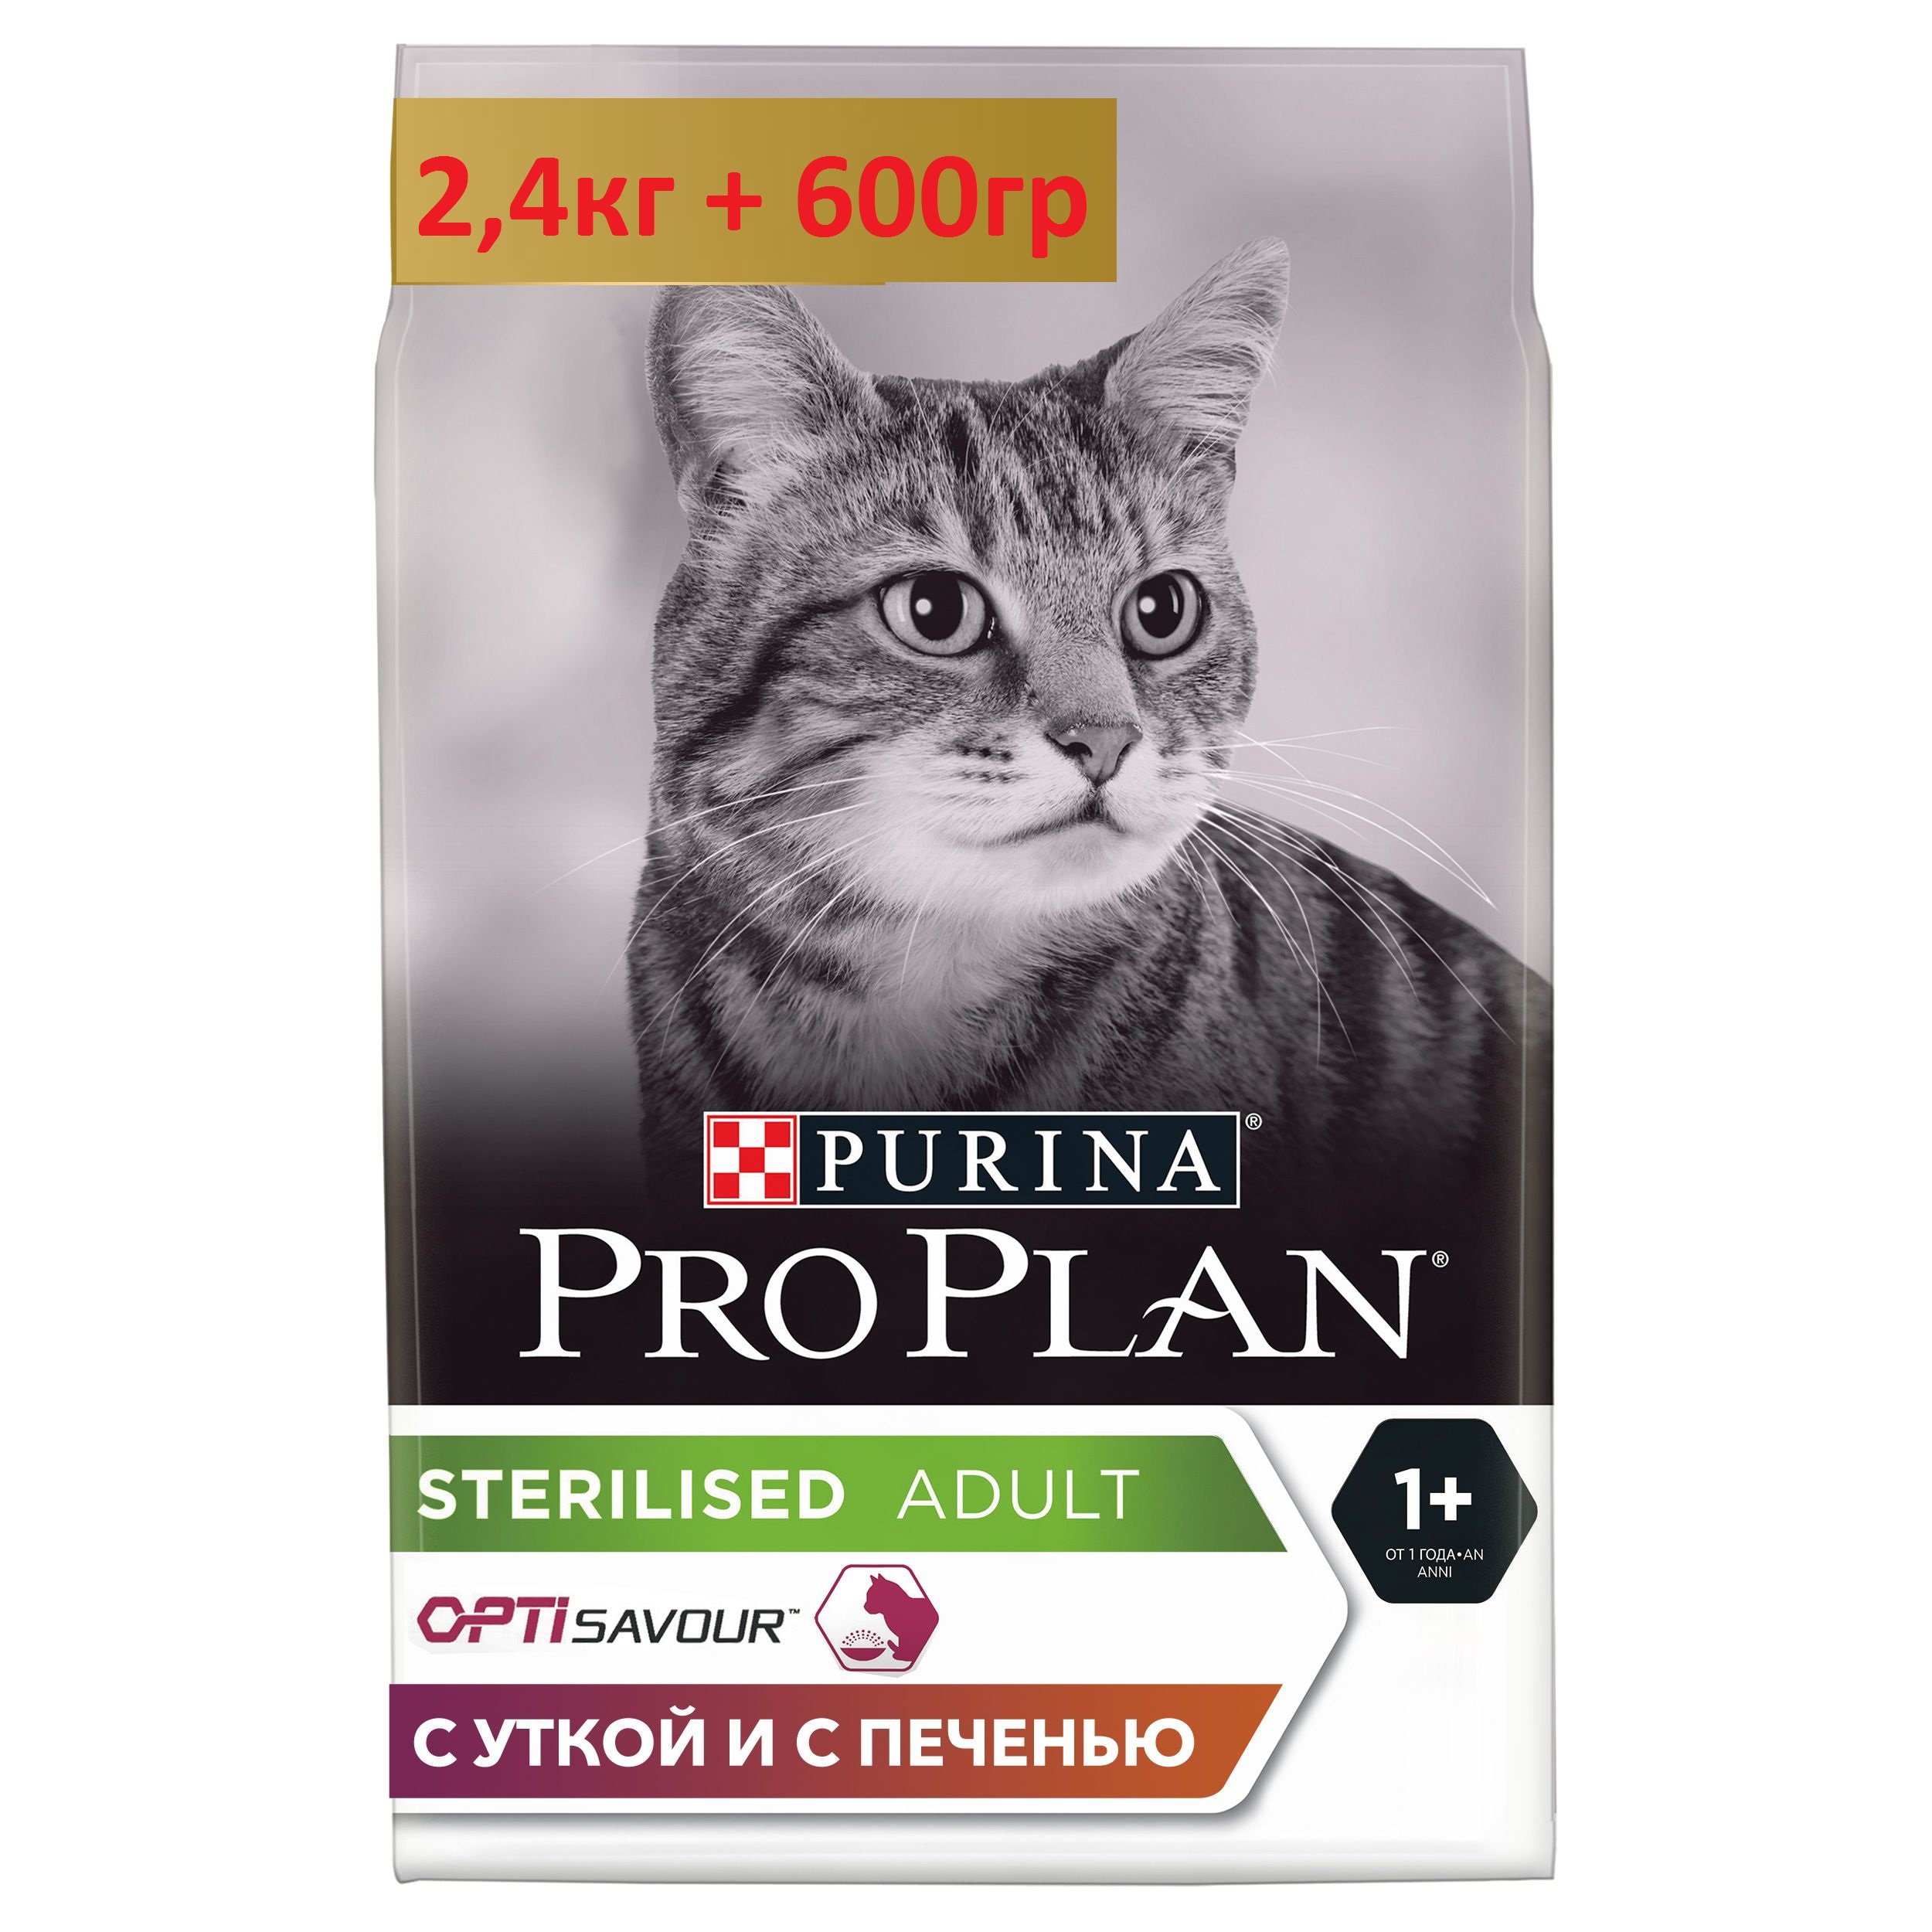 ПроПлан для кошек стерилизованных, Утка/Печень. 2,4кг + 600гр (Pro Plan)